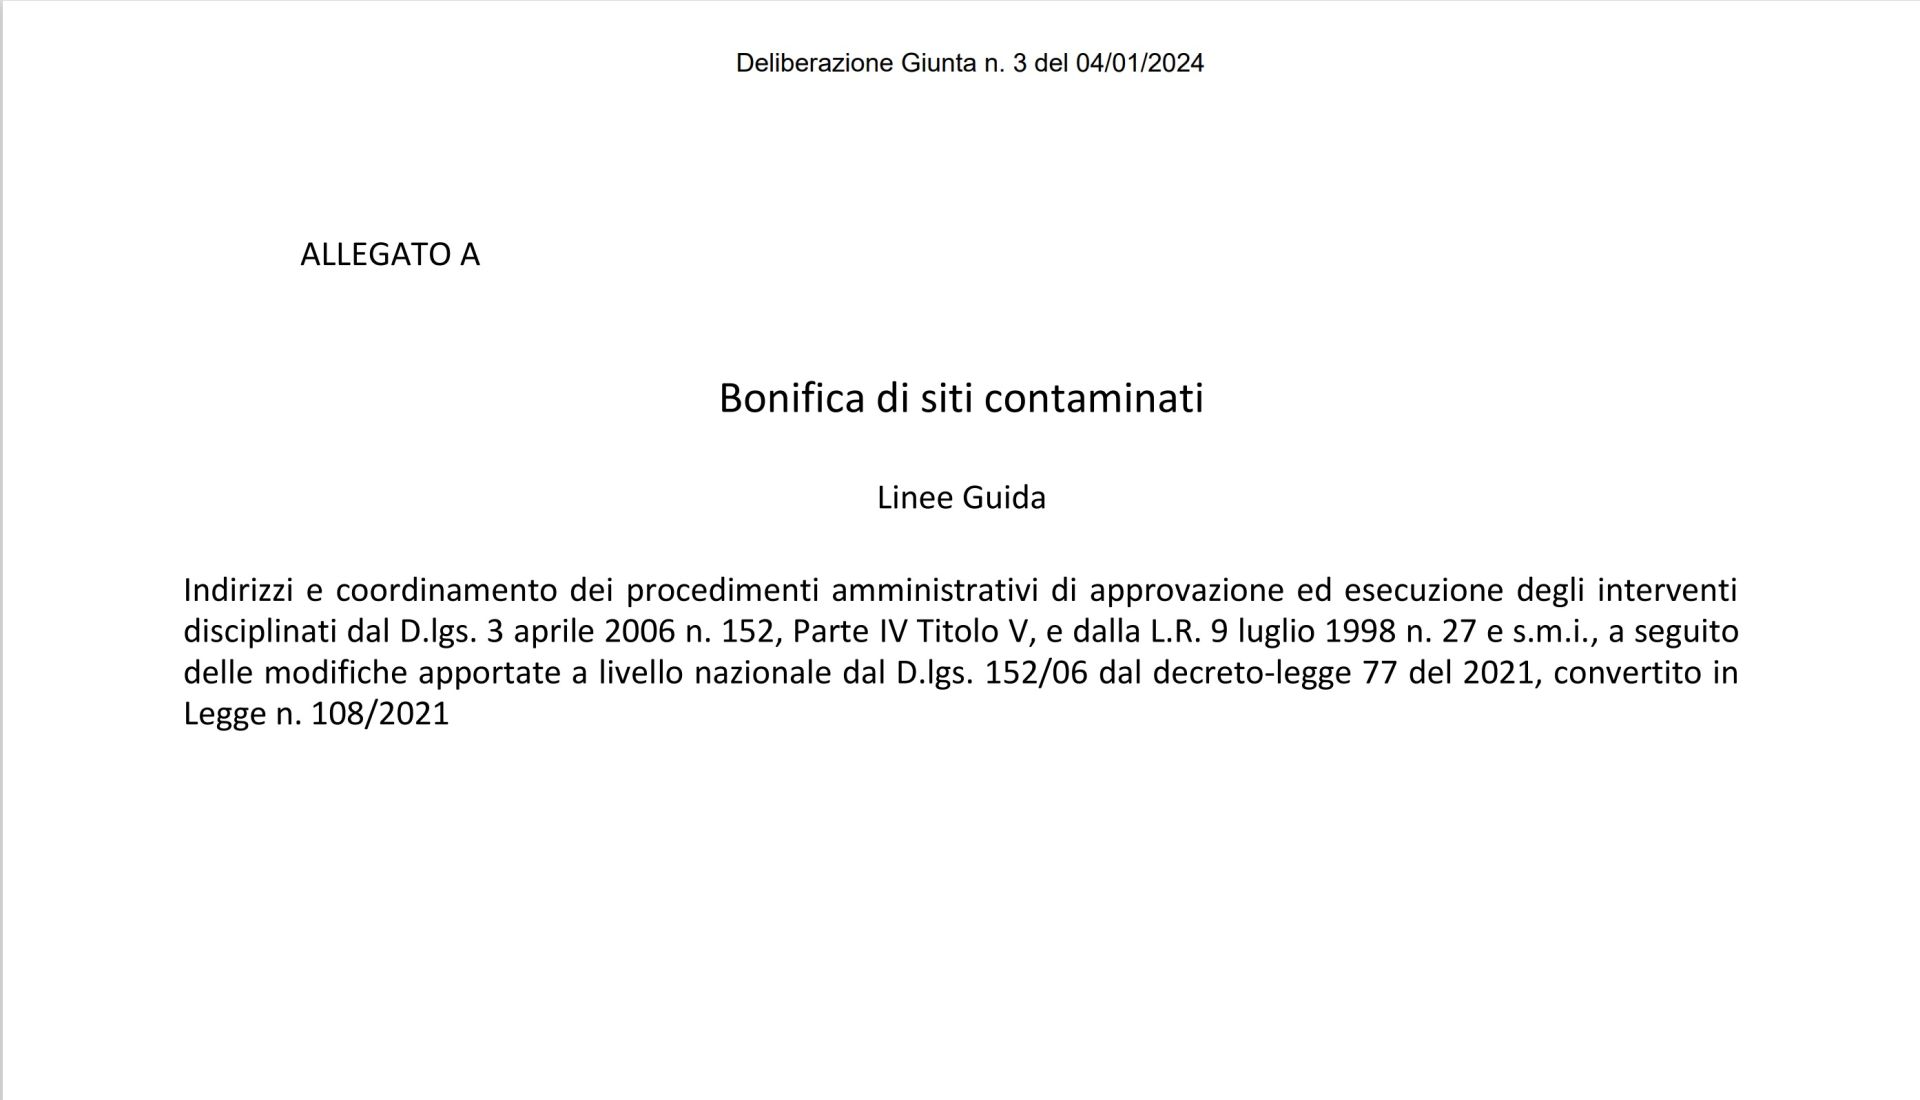 Nuove Linee Guida della Regione Lazio per la Bonifica dei siti contaminati